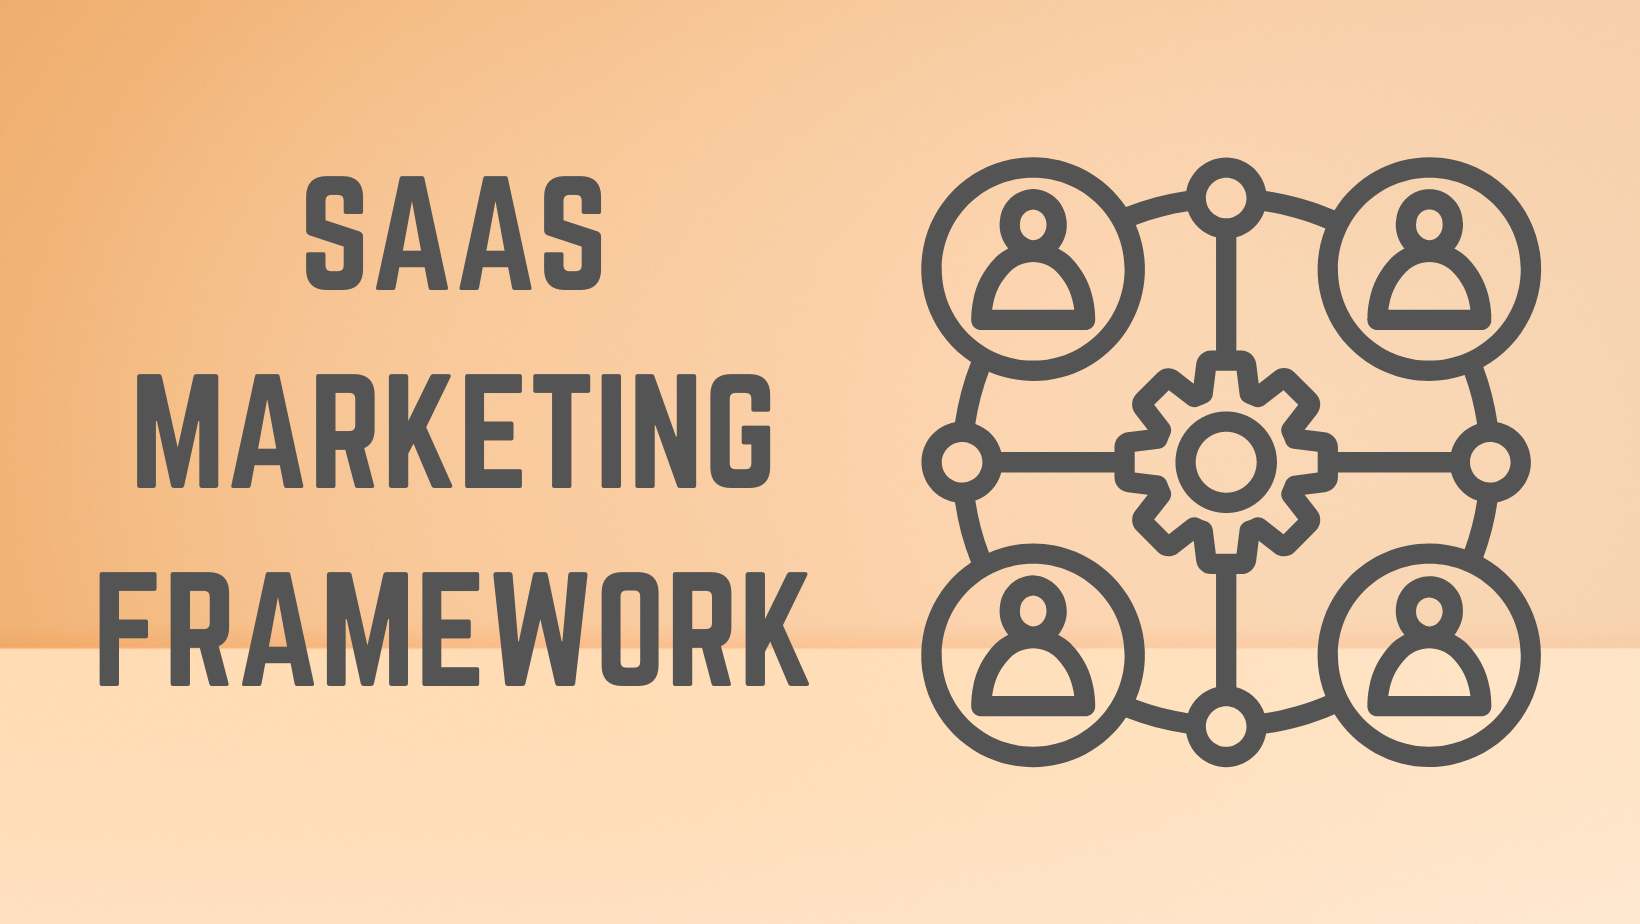 The science behind saas marketing framework